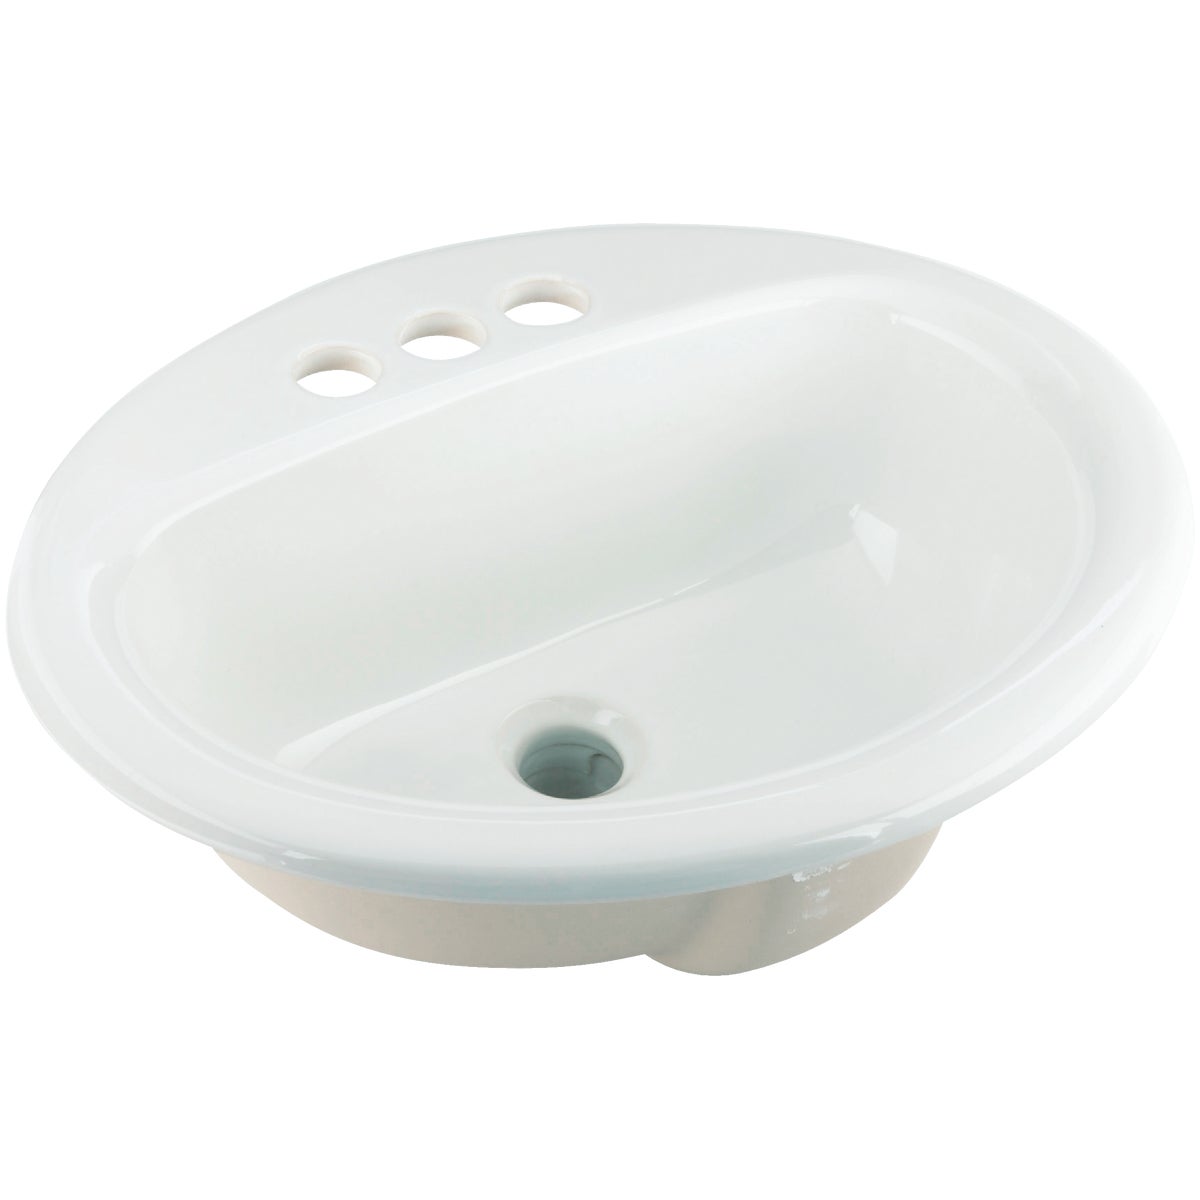 Mansfield Alto II Oval Drop-In Bathroom Sink, White